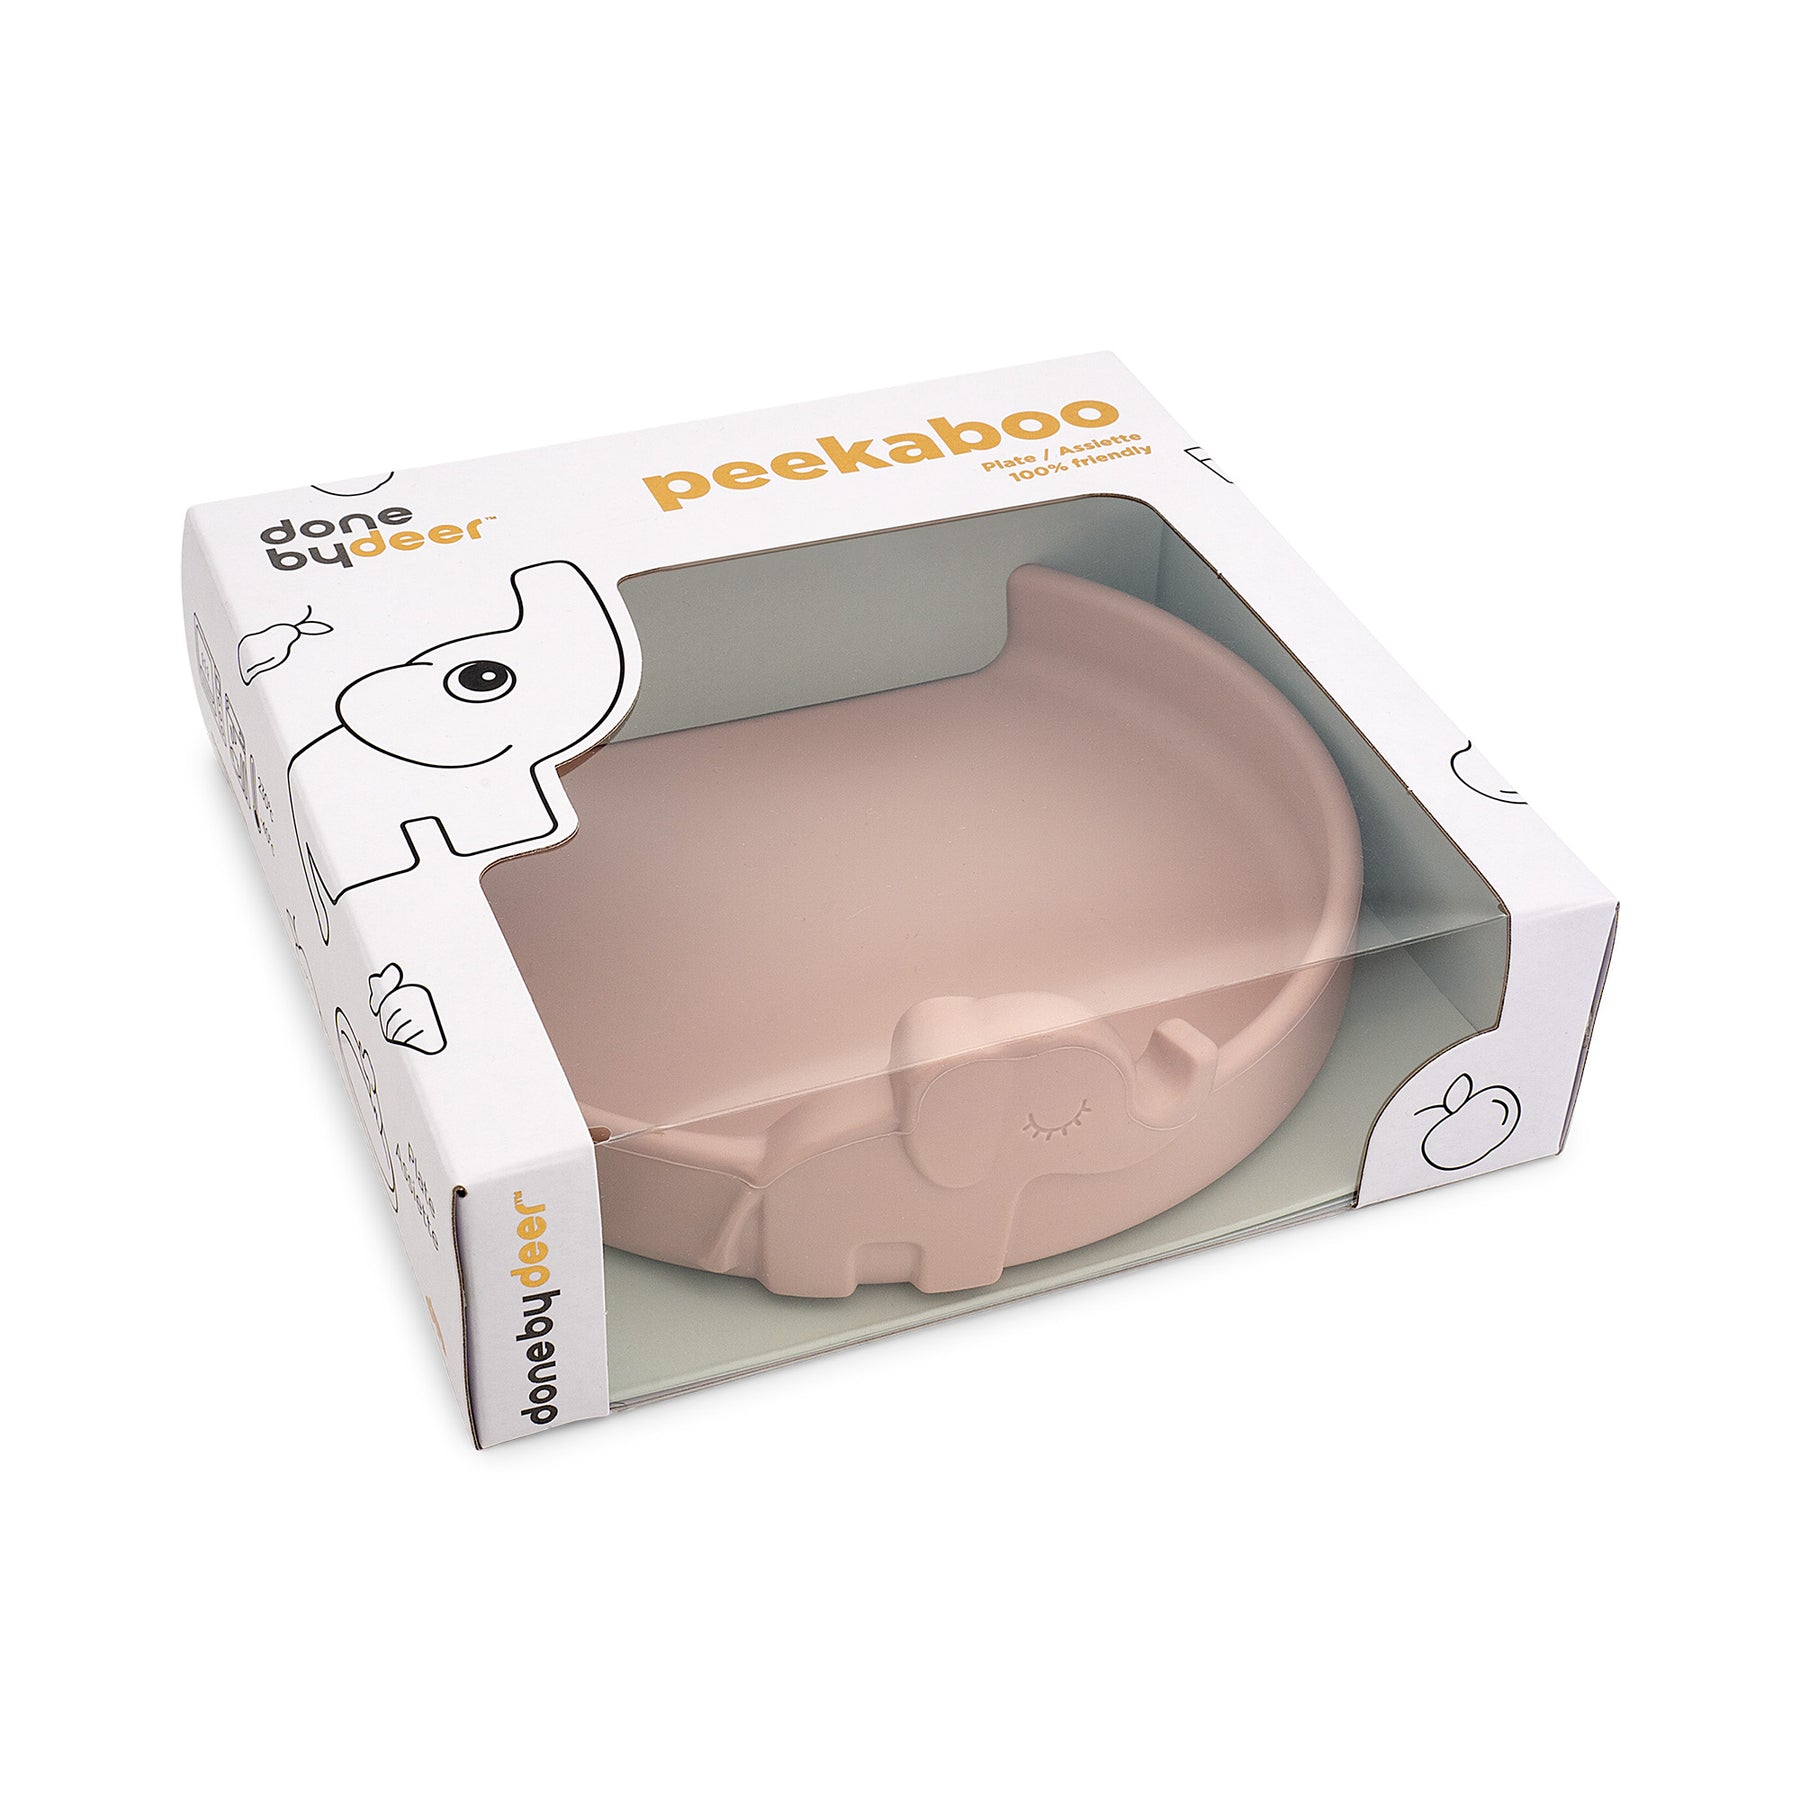 Peekaboo plate - Elphee - Powder - Packaging